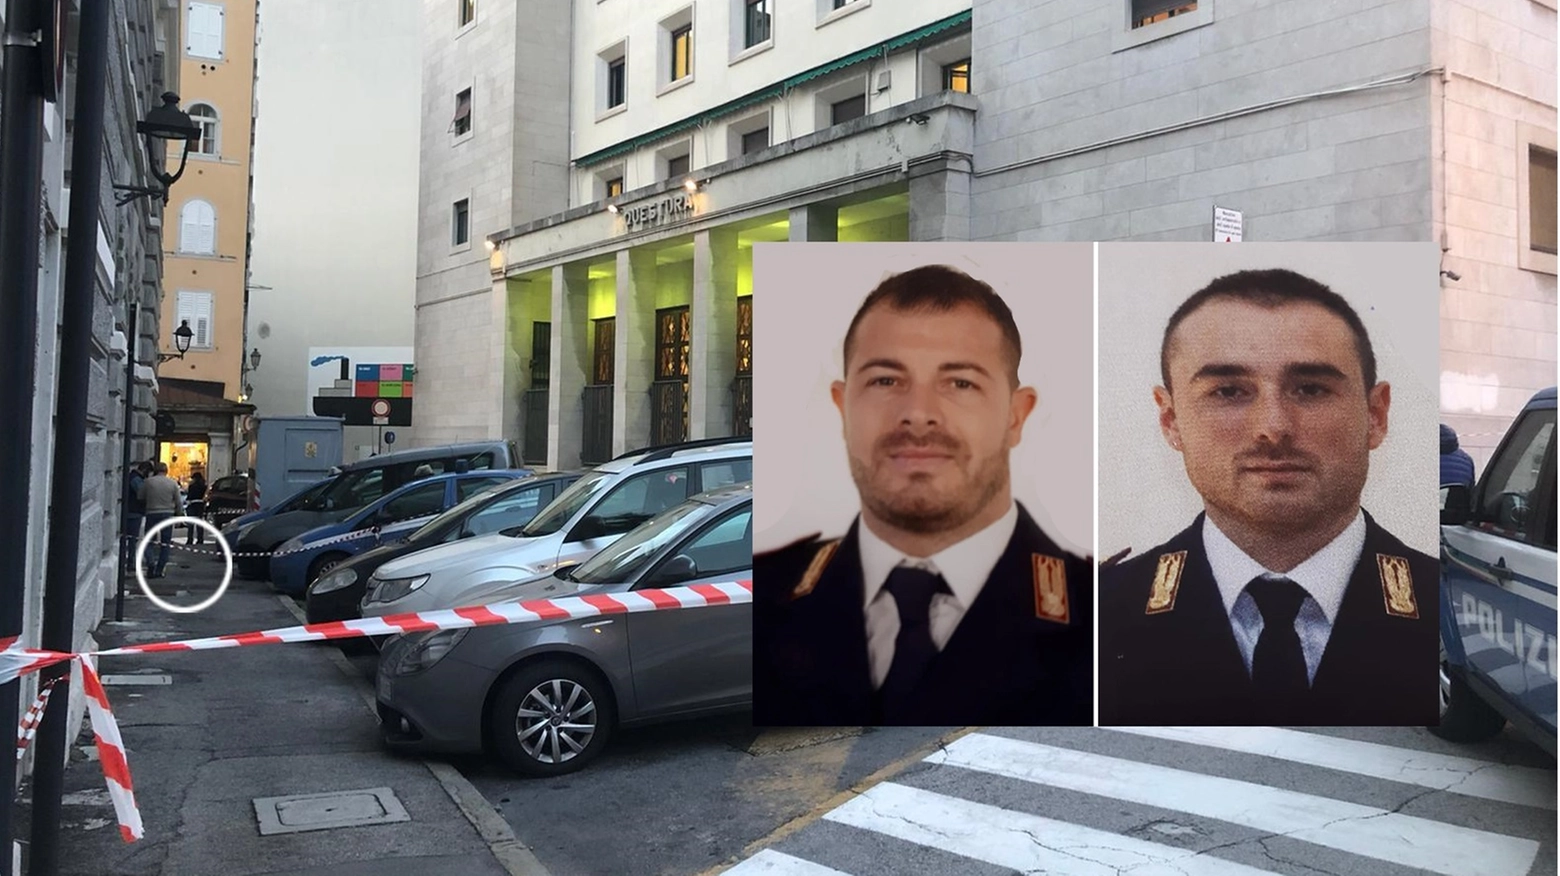 Pierluigi Rotta e Matteo Demenego, i due agenti uccisi. Nel tondo una pistola (Ansa)